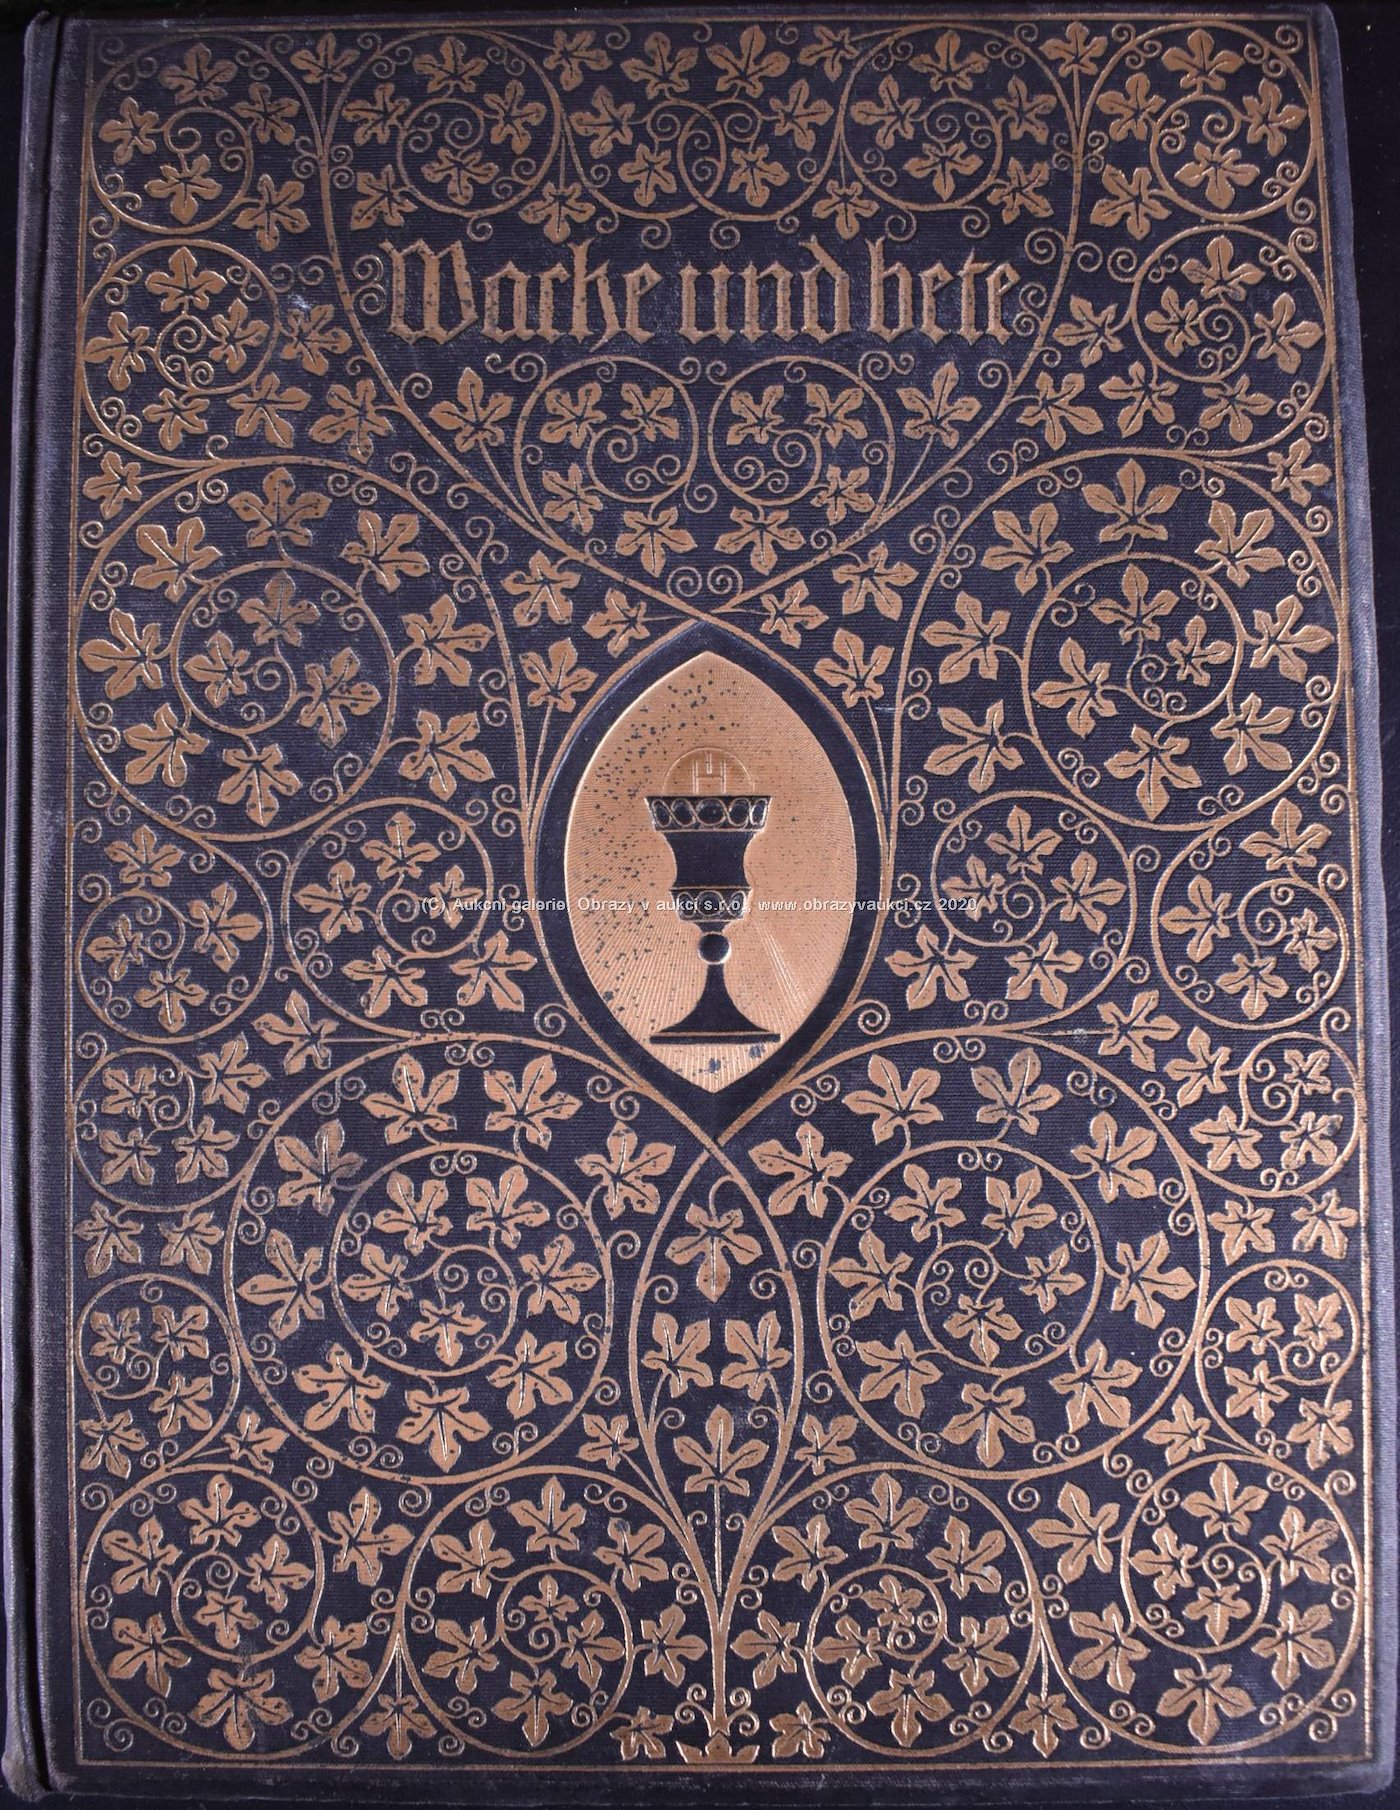 G.Ch. Dieffenbach, J.C. Heer, W. Kaden, A. Ceresole, E. Yung - Soubor dvou knih: Wache und Bete, Album der Schweiz